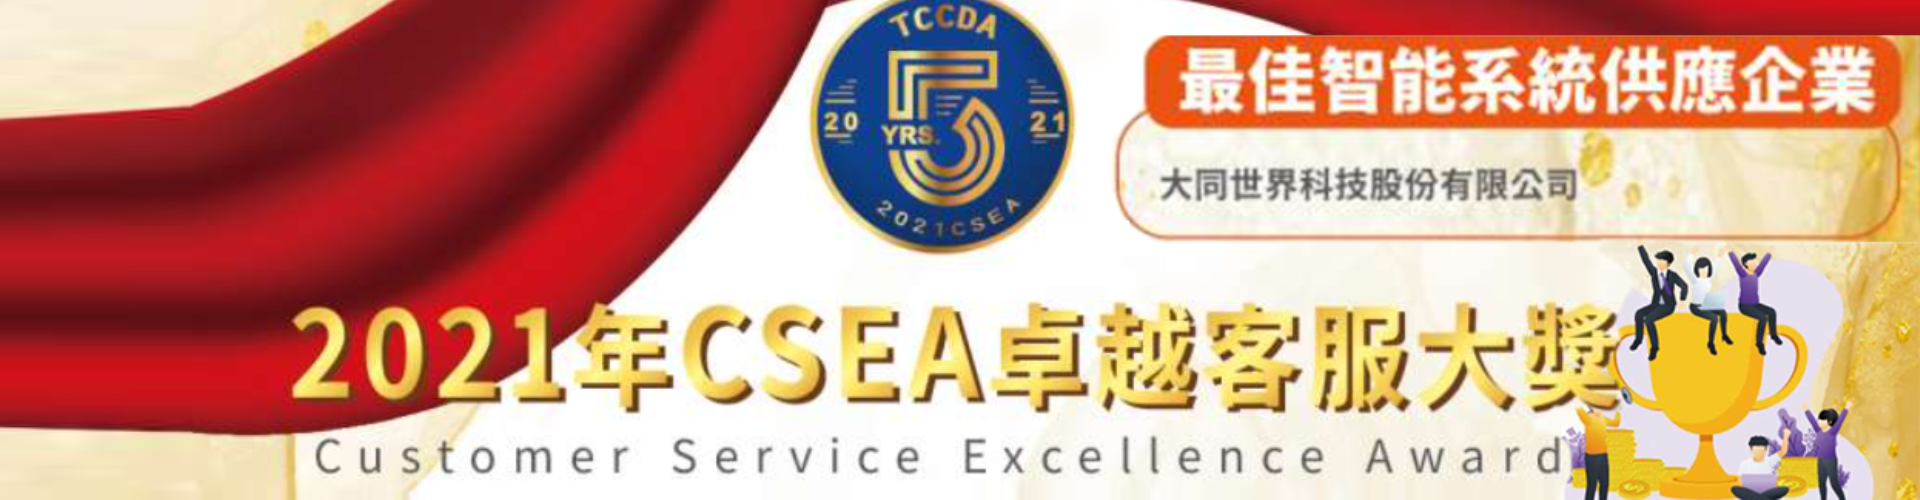 大世科-賀! 大同世界科技(股)公司(tsti)榮獲 2021 CSEA卓越客服大獎: 最佳智能系統供應企業。 TCCDA 2021 Customer Service Excellence Awards